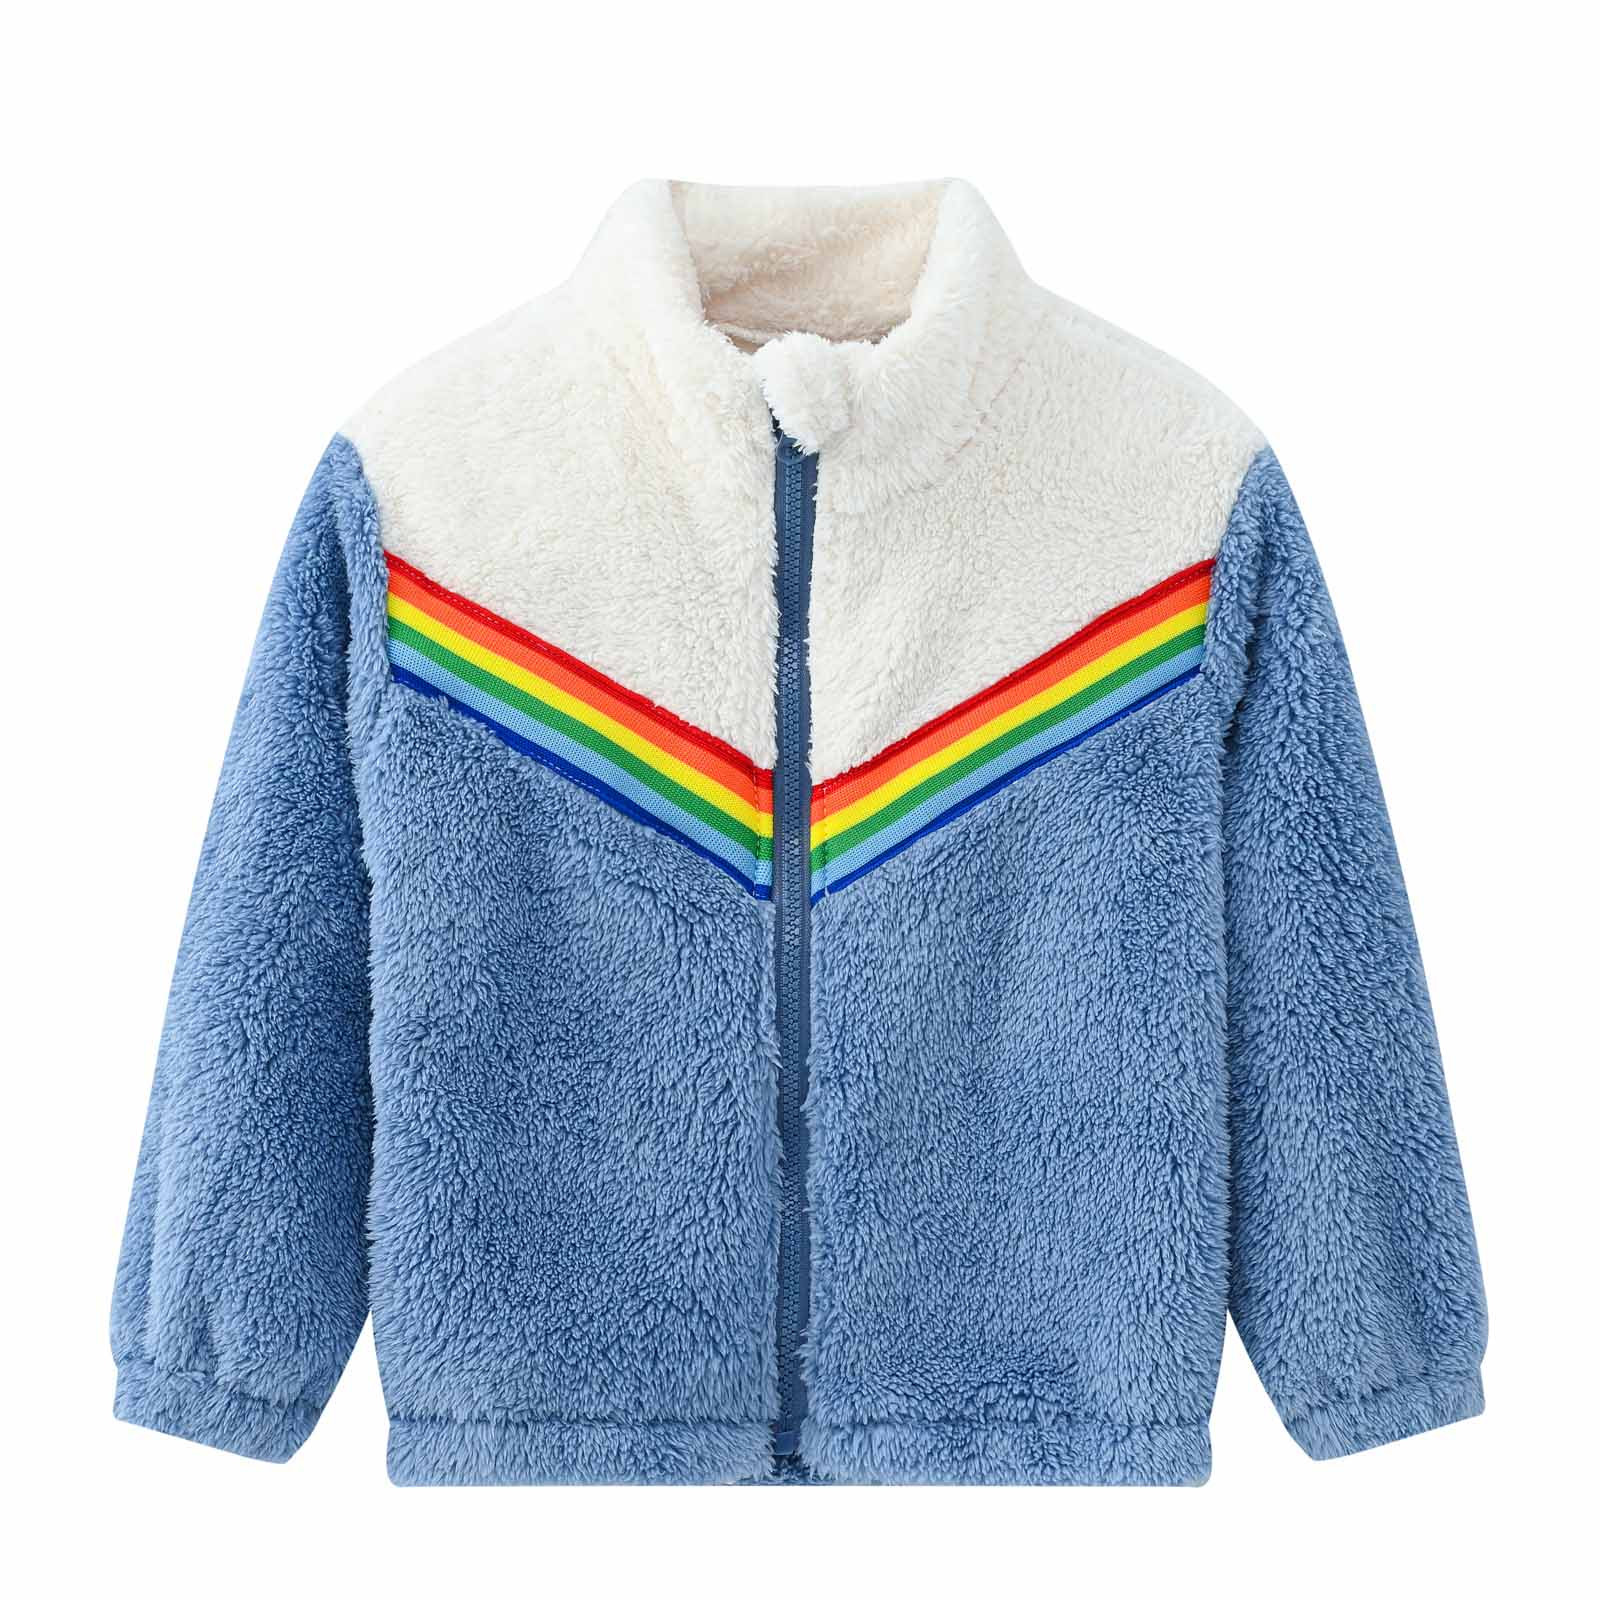 YYDGH Girls Zipper Jacket Fuzzy Sweatshirt Long Sleeve Casual Cozy Fleece Sherpa Outwear Coat Full-Zip Rainbow Jackets(Blue,7-8 Years) - image 1 of 8